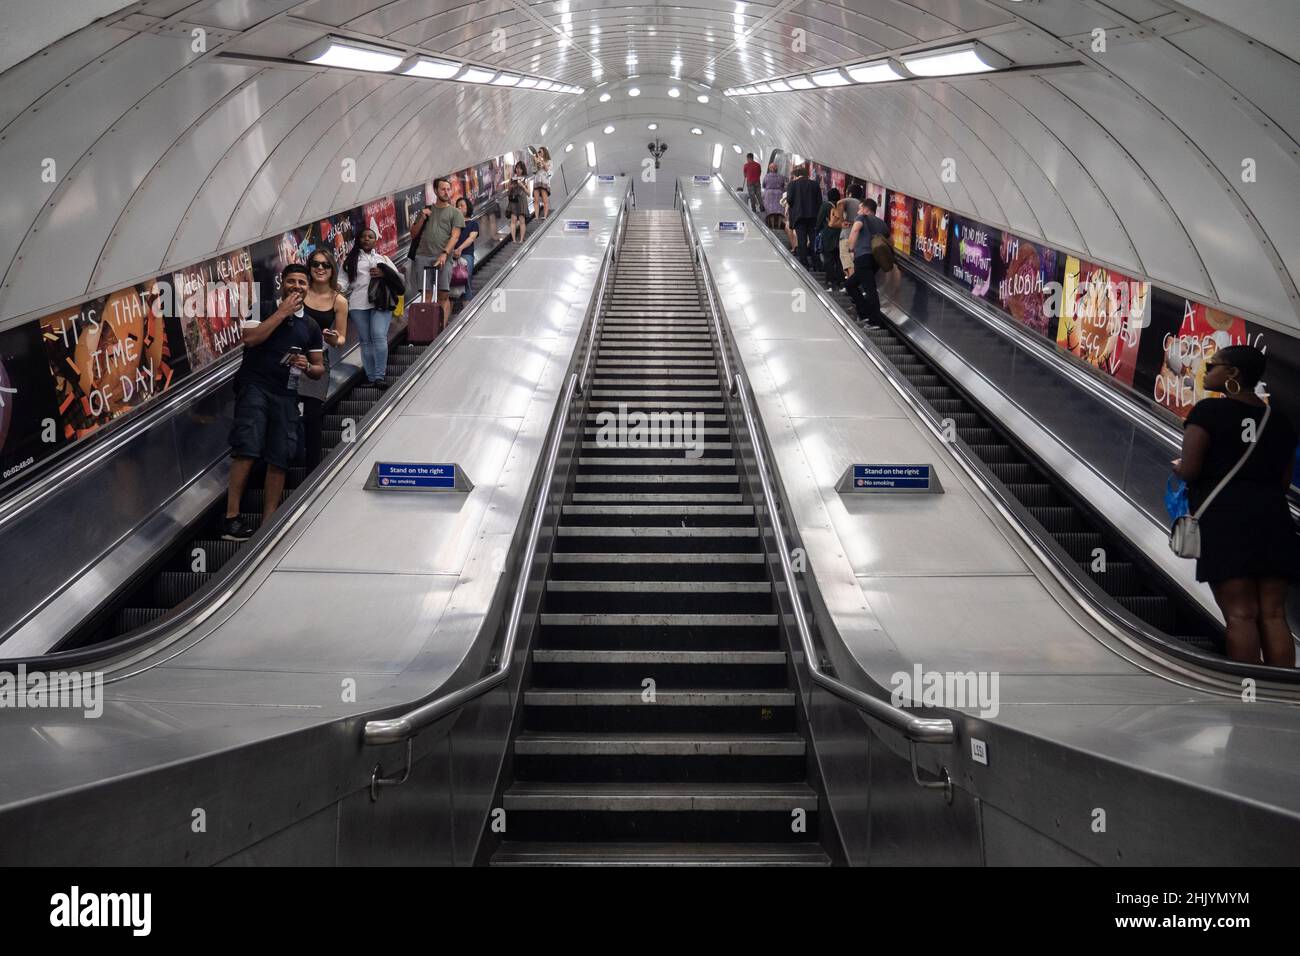 U-Bahn London. Touristen und Reisende auf den Rolltreppen des öffentlichen Nahverkehrssystems der britischen Hauptstadt. Symmetrische Architekturansicht mit niedrigem Winkel. Stockfoto